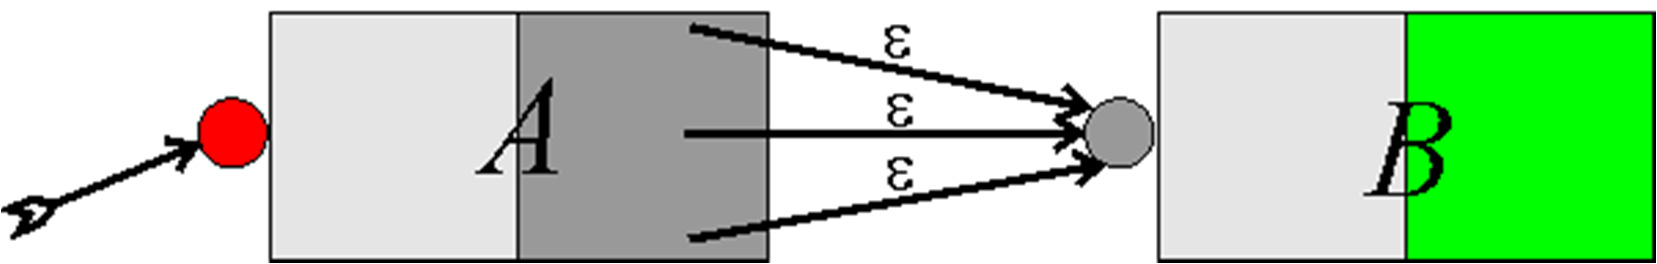 AFNs. Concatenação. A concatenação A B é formada colocando-se os automatos en série.